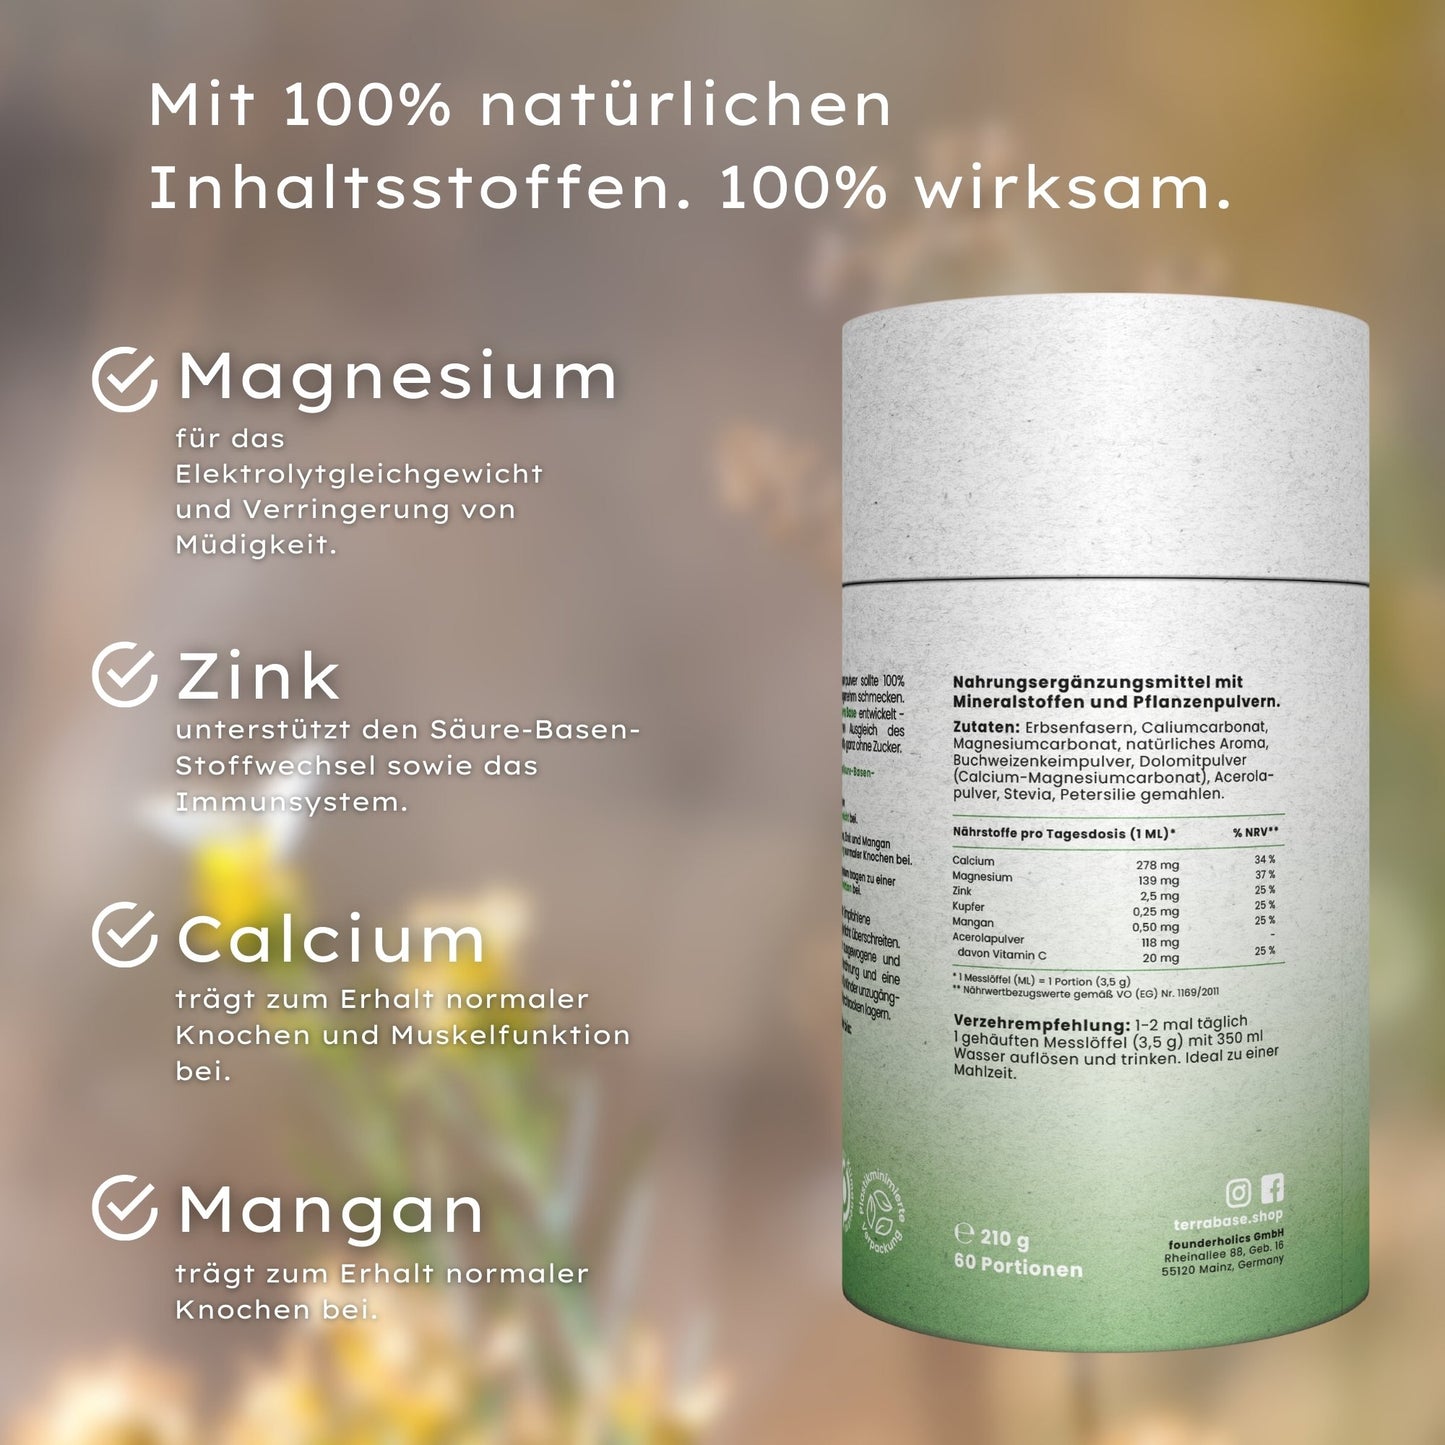 Saeure Basen Pulver Inhaltsstoffe: Magnesium, Zink, Calcium und Mangan